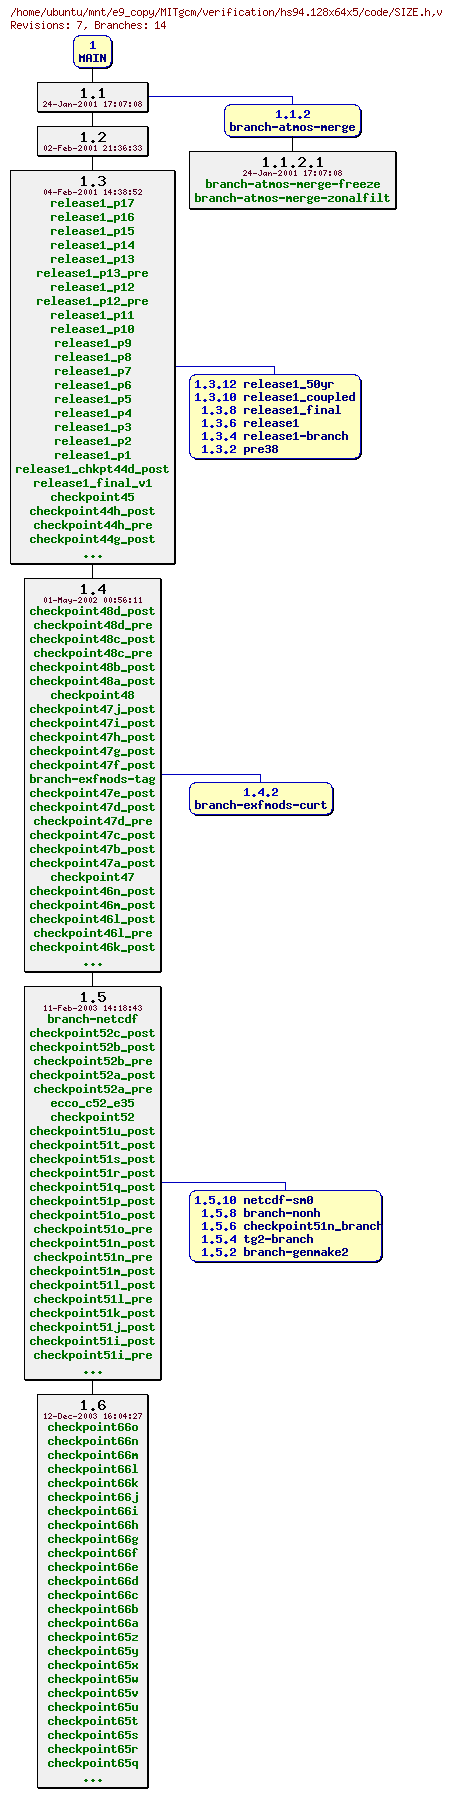 Revisions of MITgcm/verification/hs94.128x64x5/code/SIZE.h